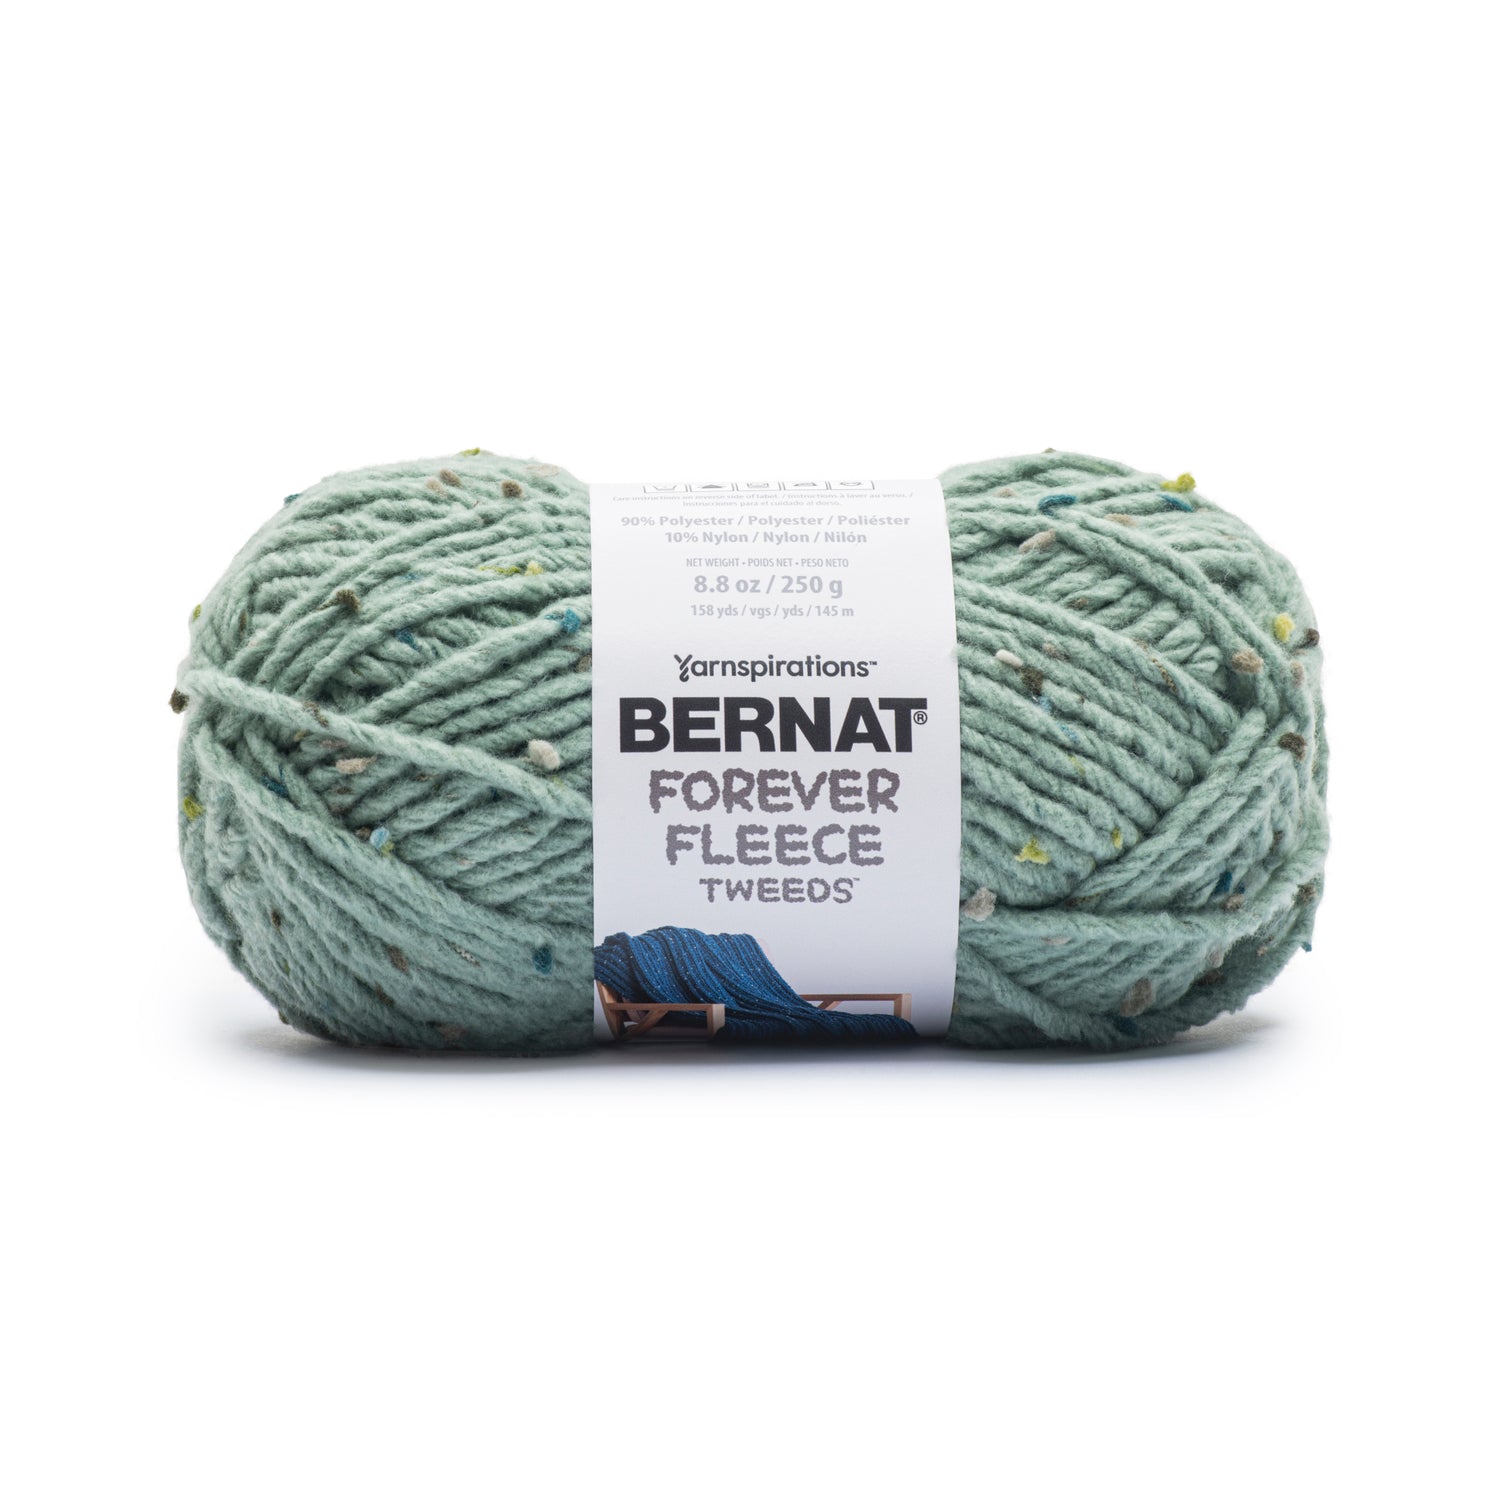 Bernat Forever Fleece Tweeds Yarn (250g/8.8oz) Ivy Tweed